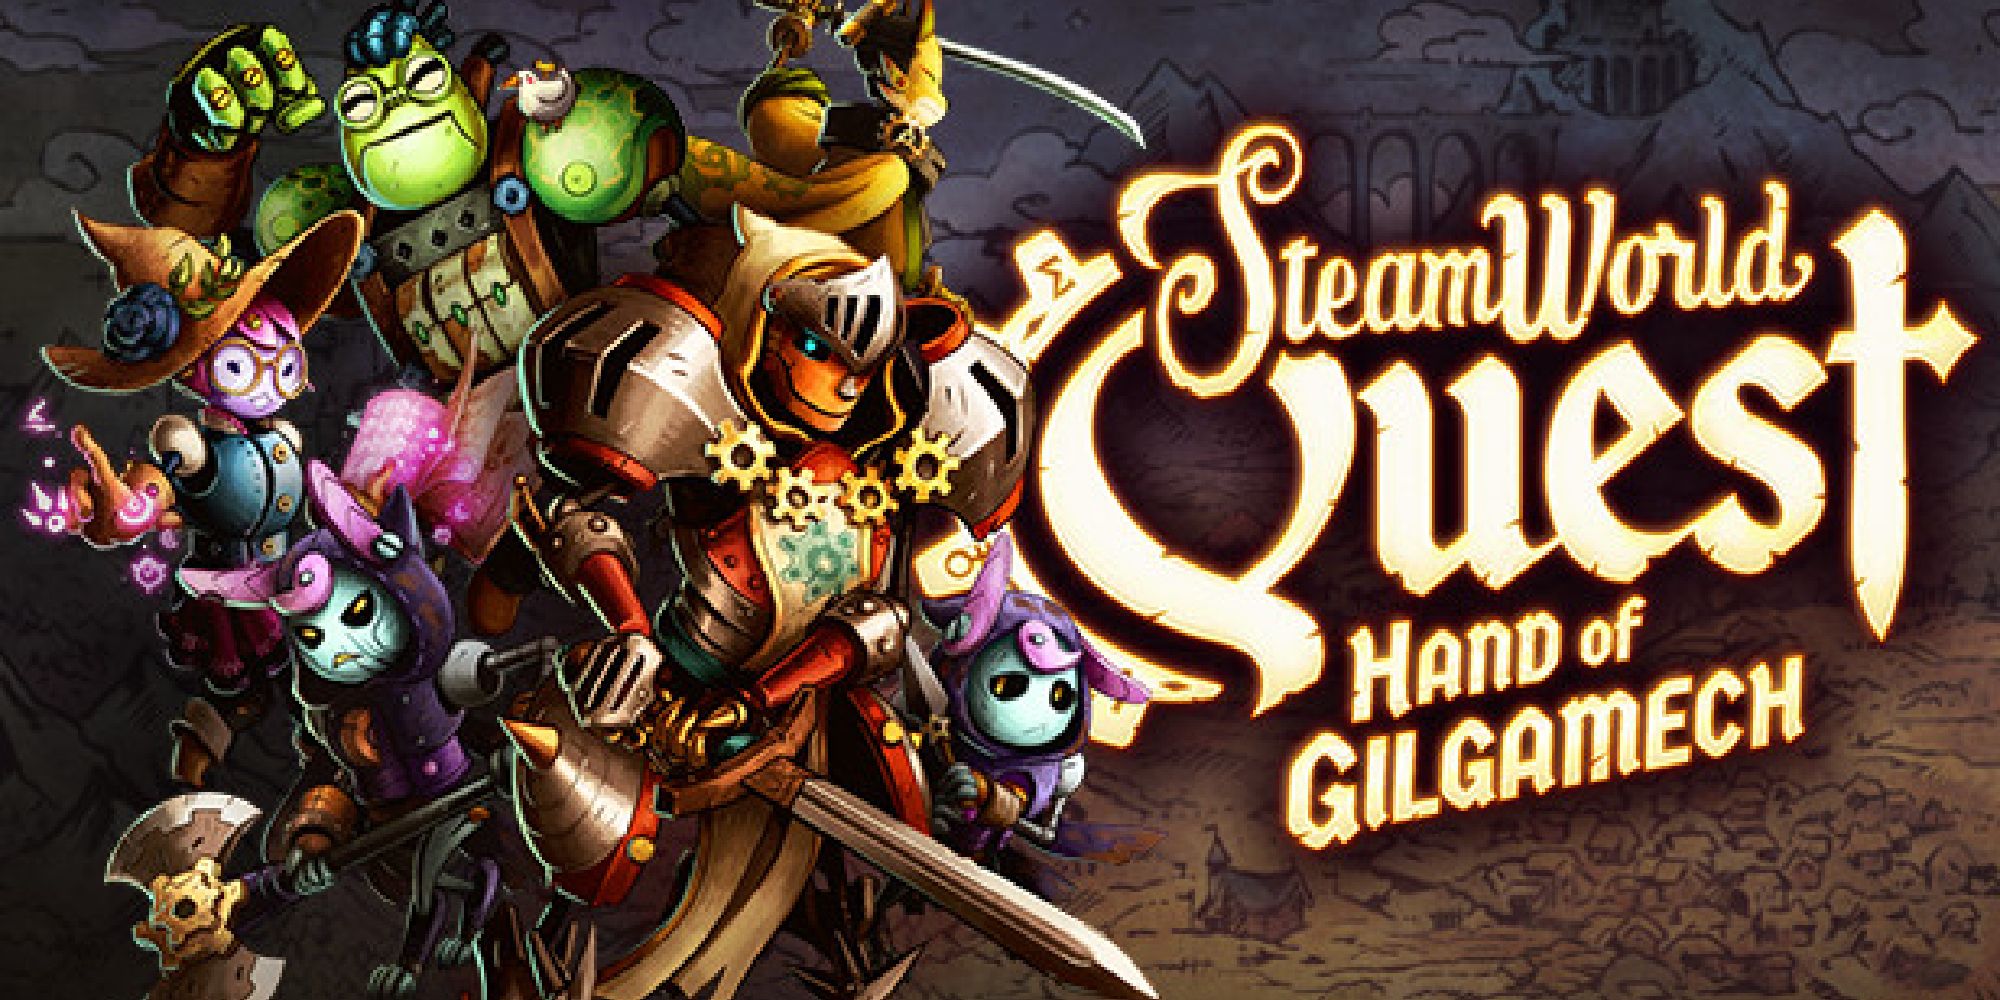 SteamWorld Quest Hand of Gilgamech promotional art